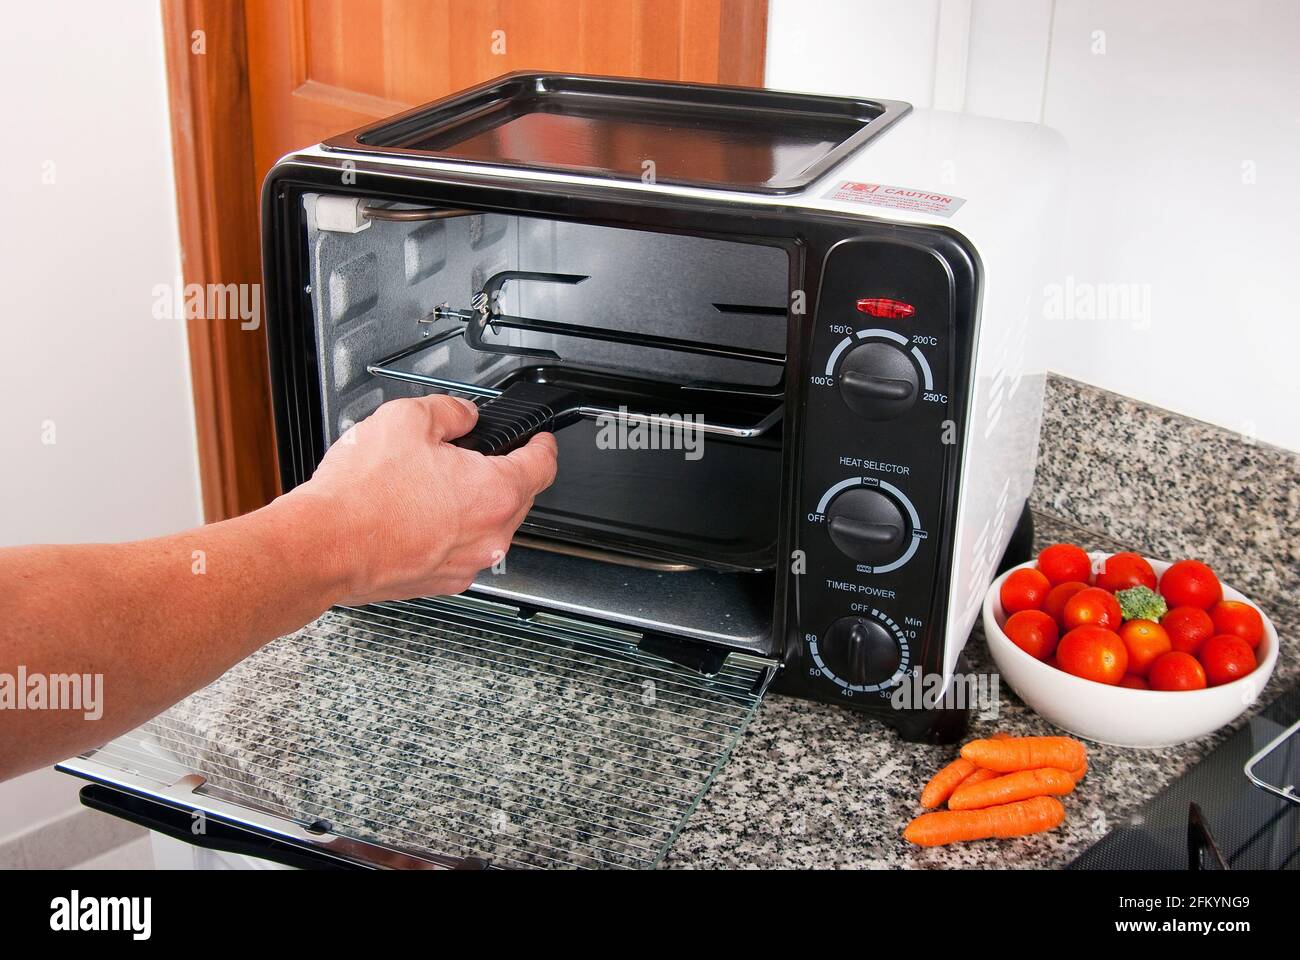 Aparato doméstico; horno tostador, foto en cocina. Foto de stock